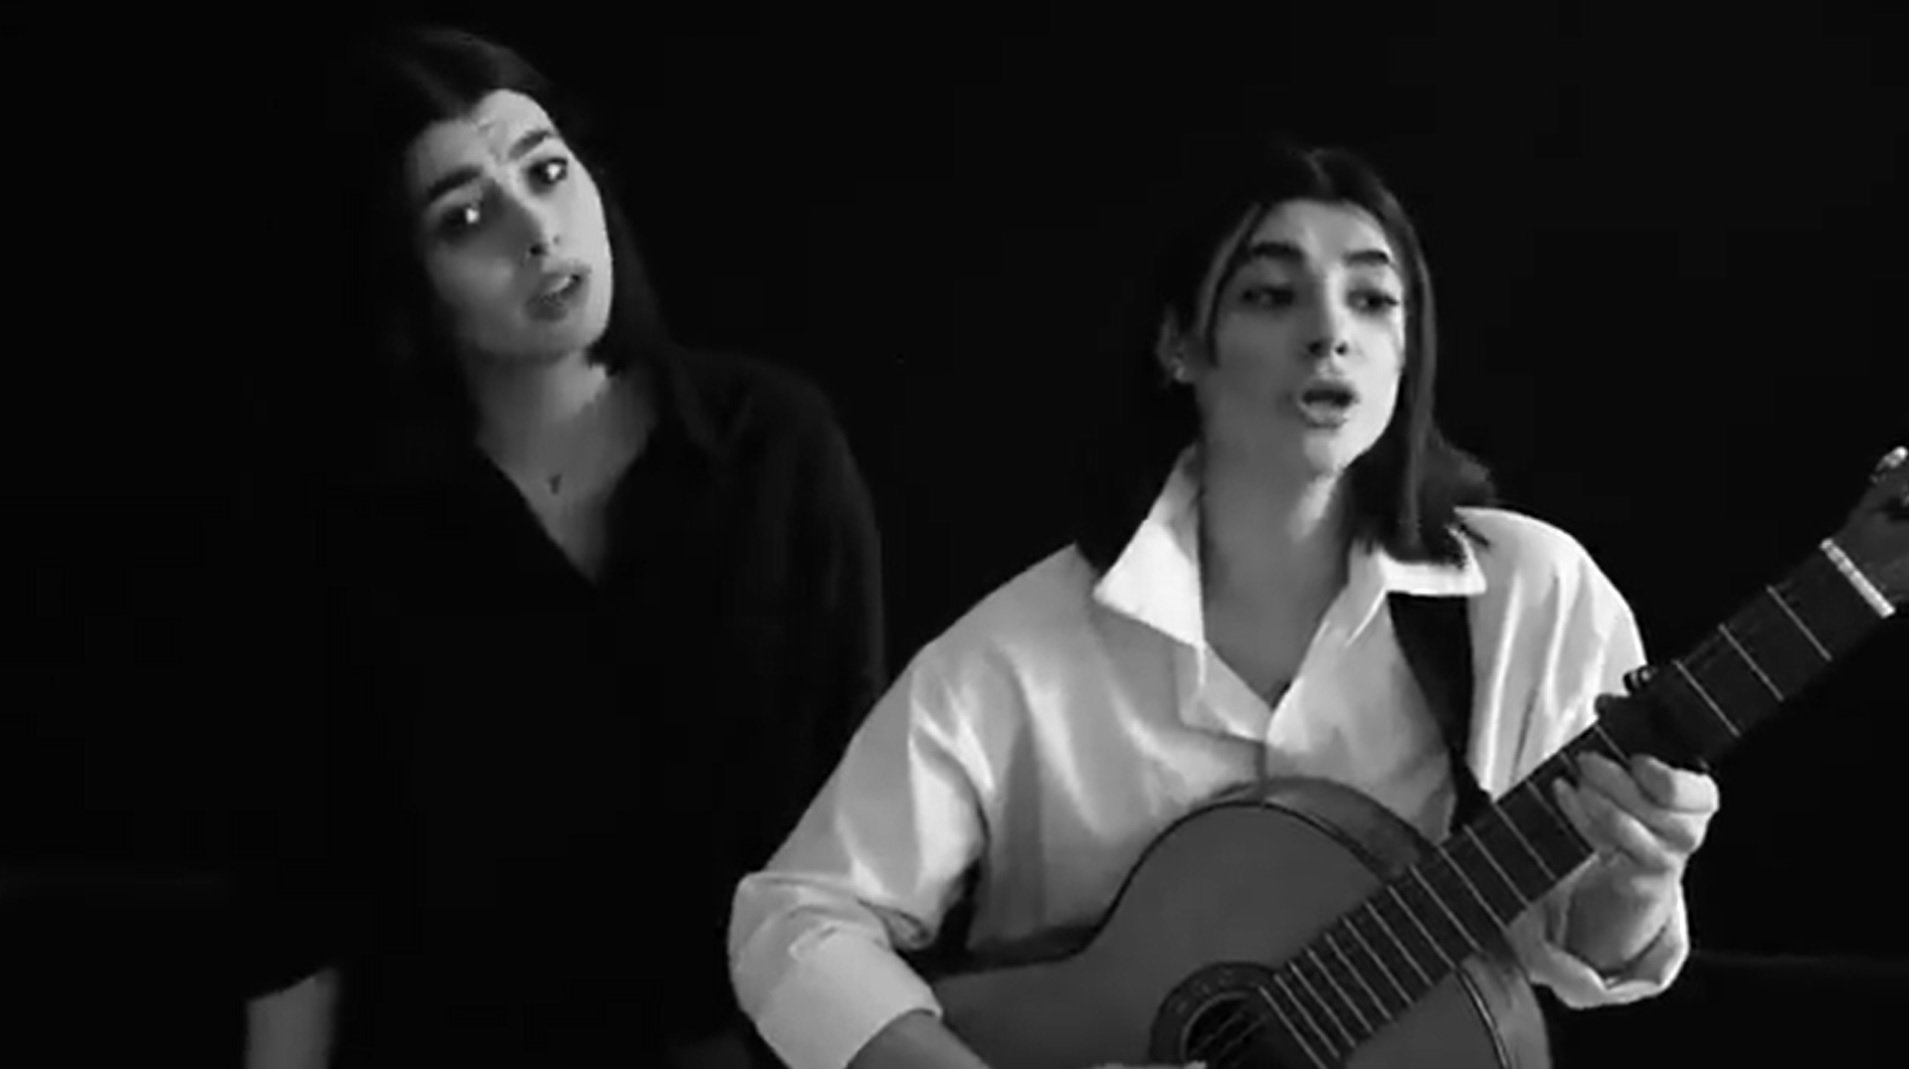 El emotivo canto del 'Bella Ciao' en farsi de las chicas iraníes | VÍDEO